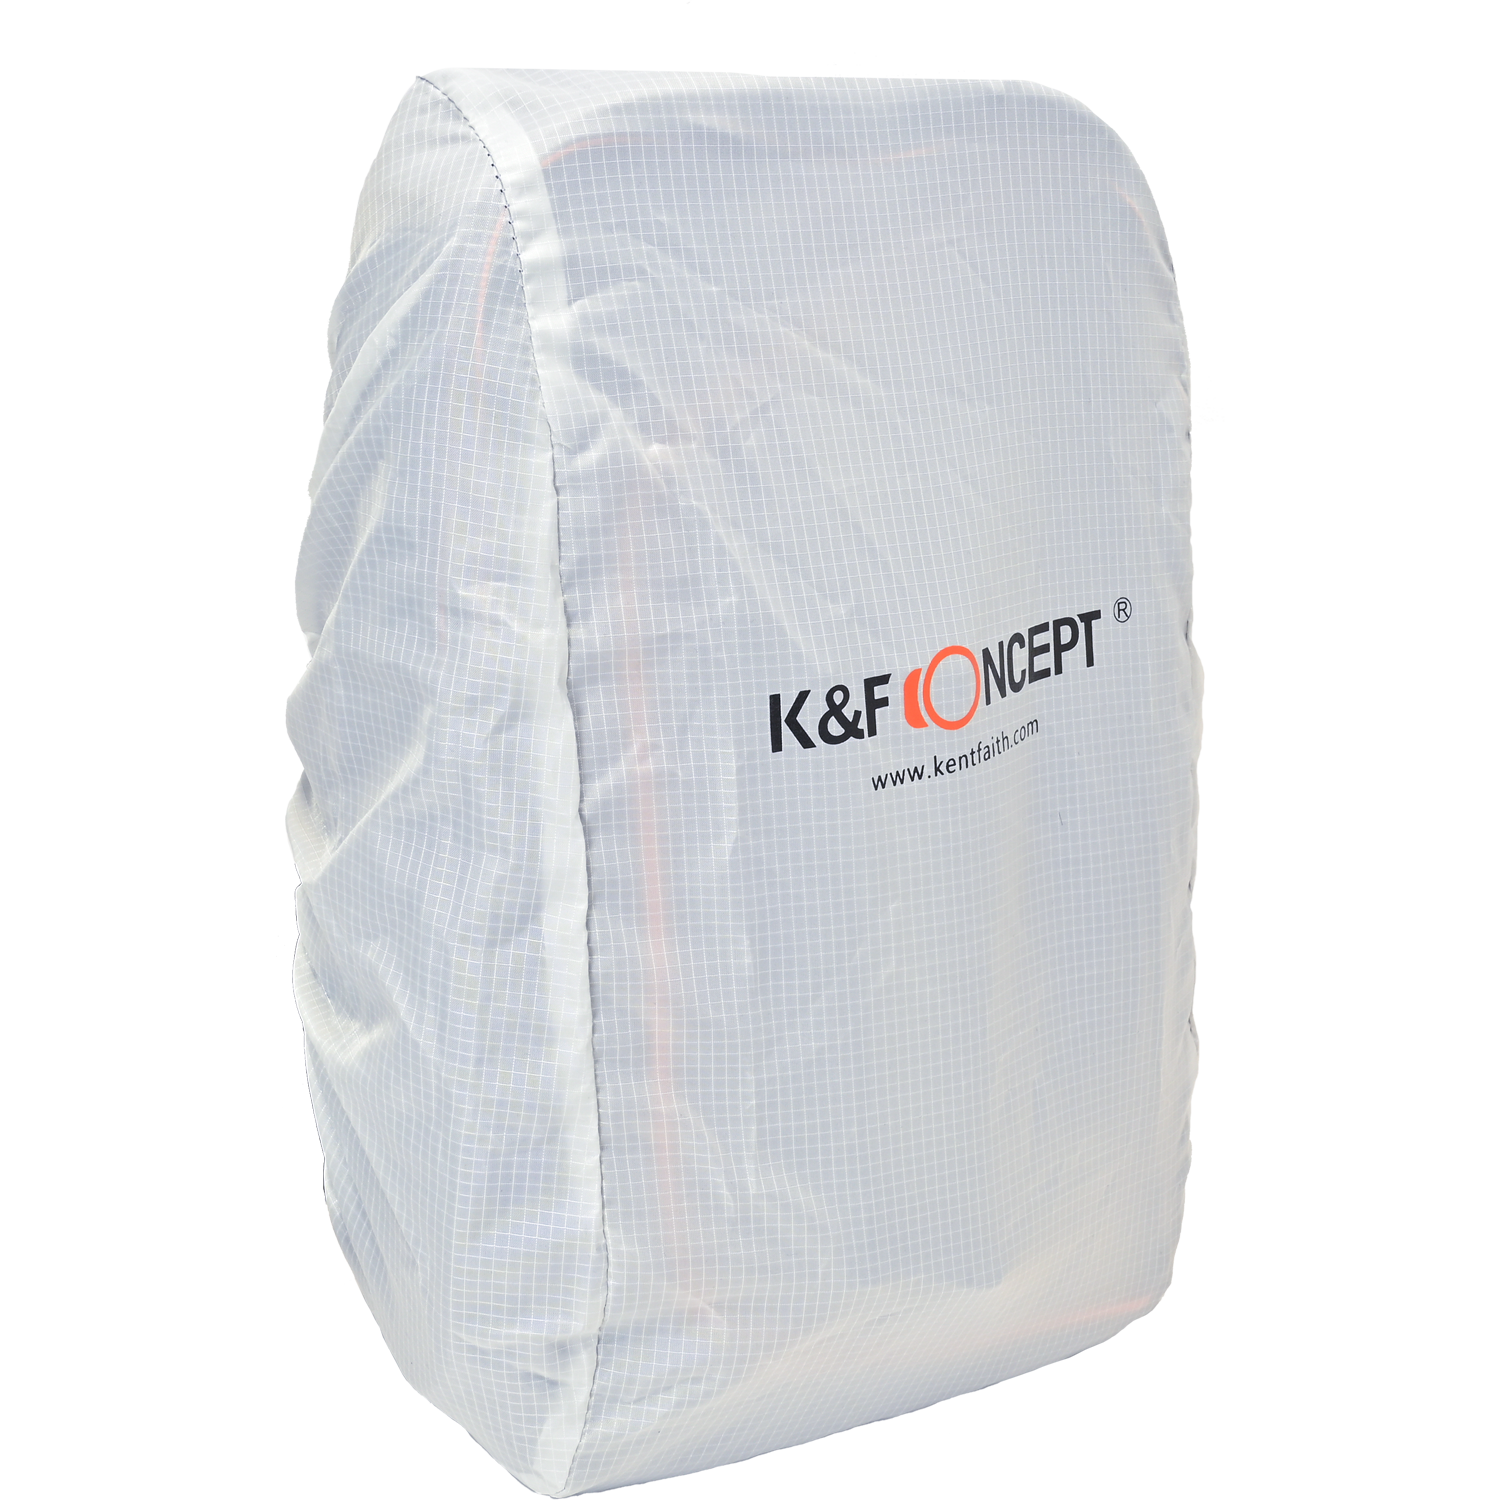 K&F Concept Backpack KF13.050 Camera tek